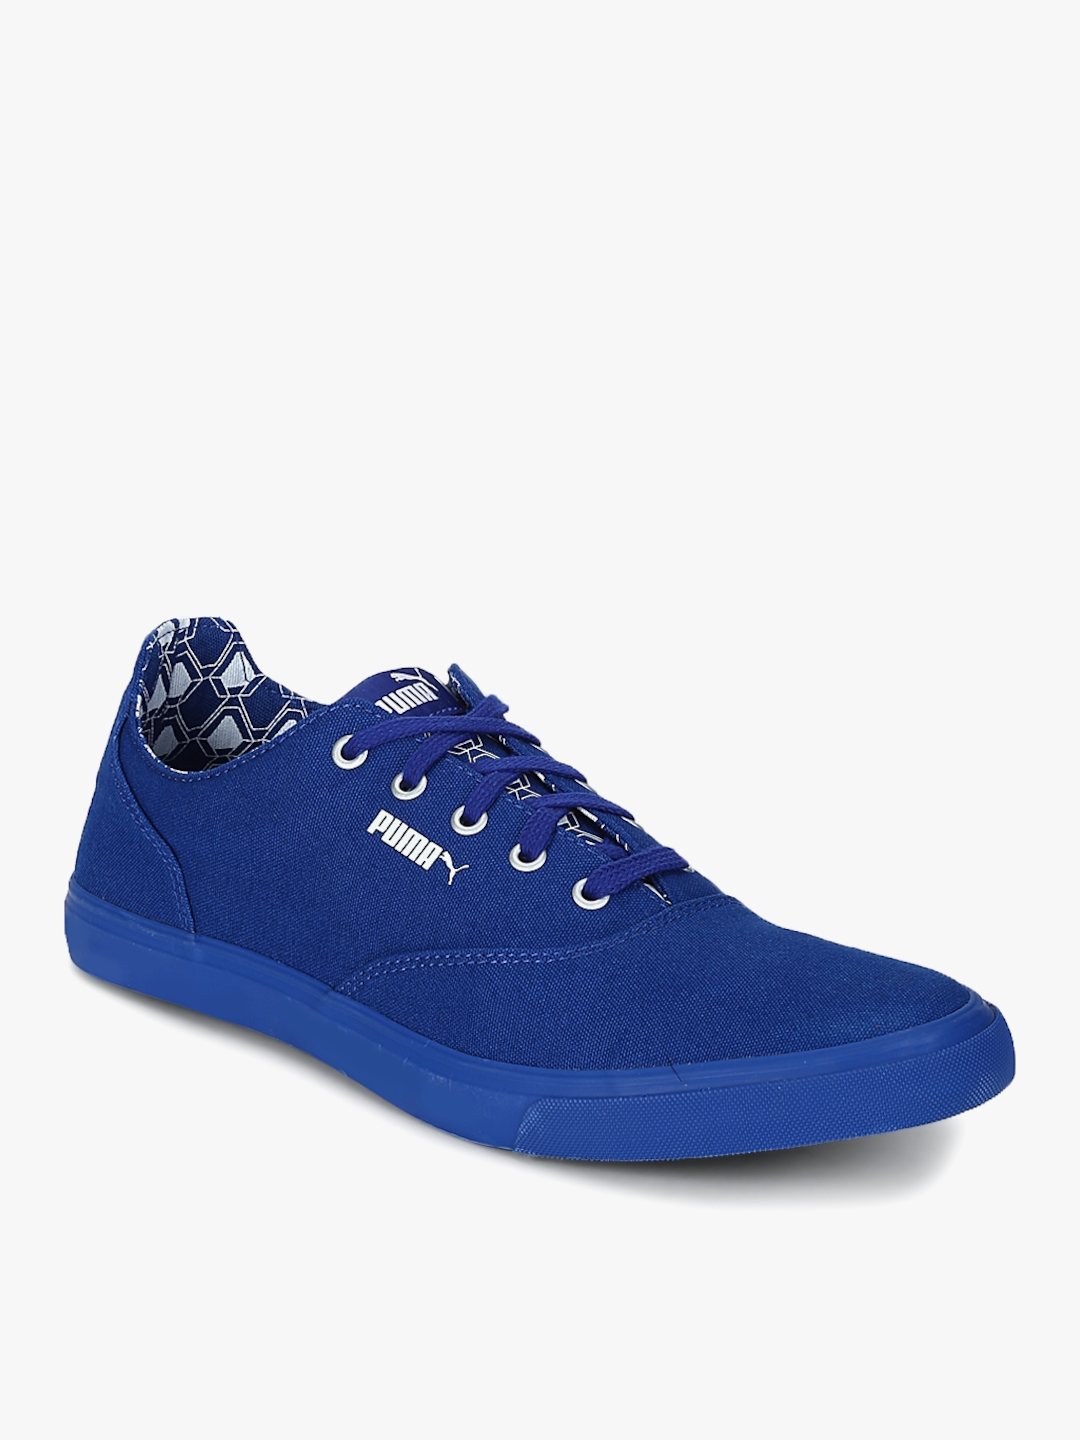 Buy Pop X Idp Blue Sneakers - Casual 